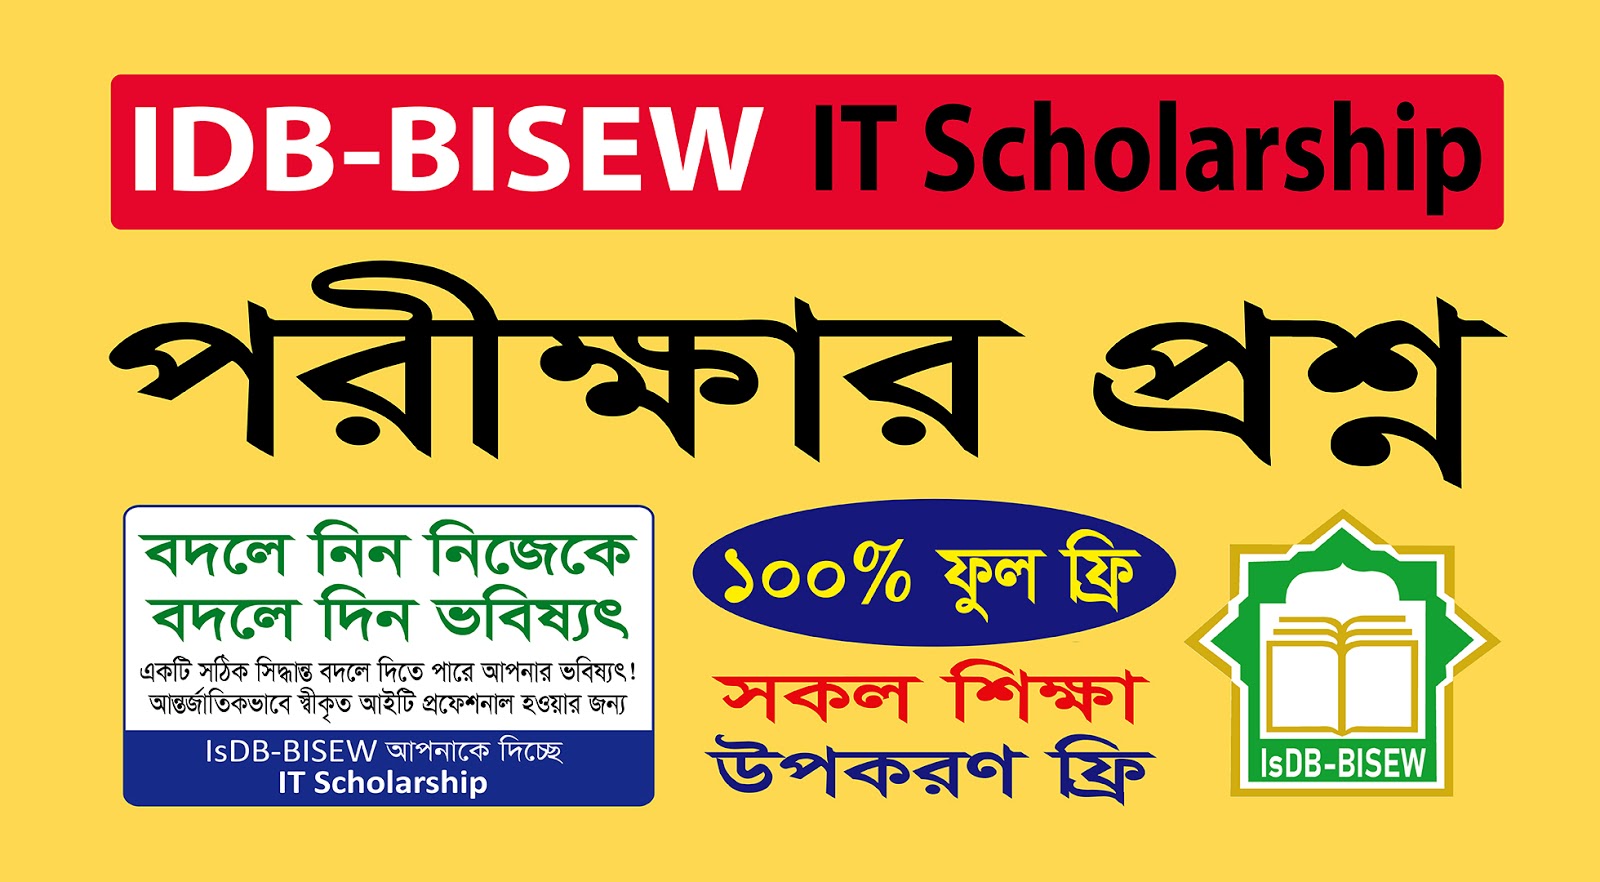 idb-bisew-it-scholarship-question-solution-bayker-career-school